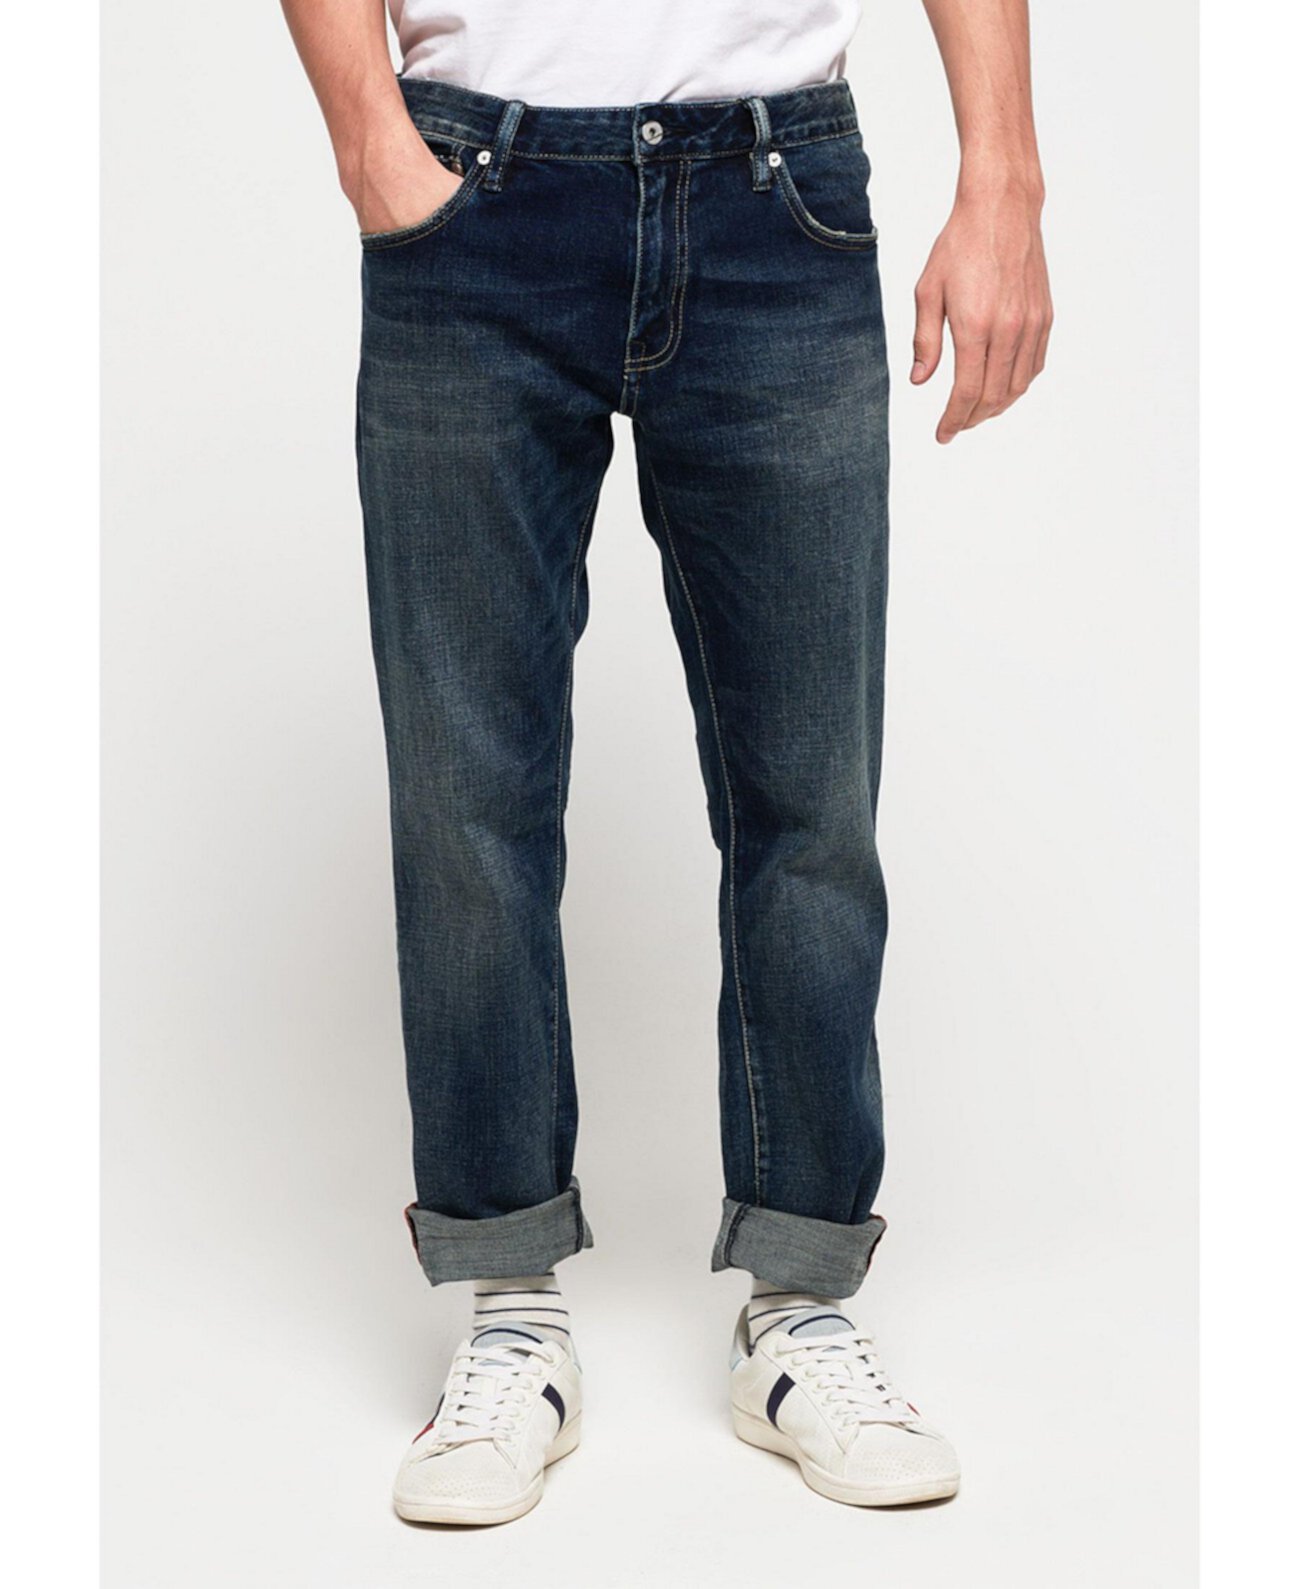 Мужские джинсы Daman с прямыми ногами Superdry